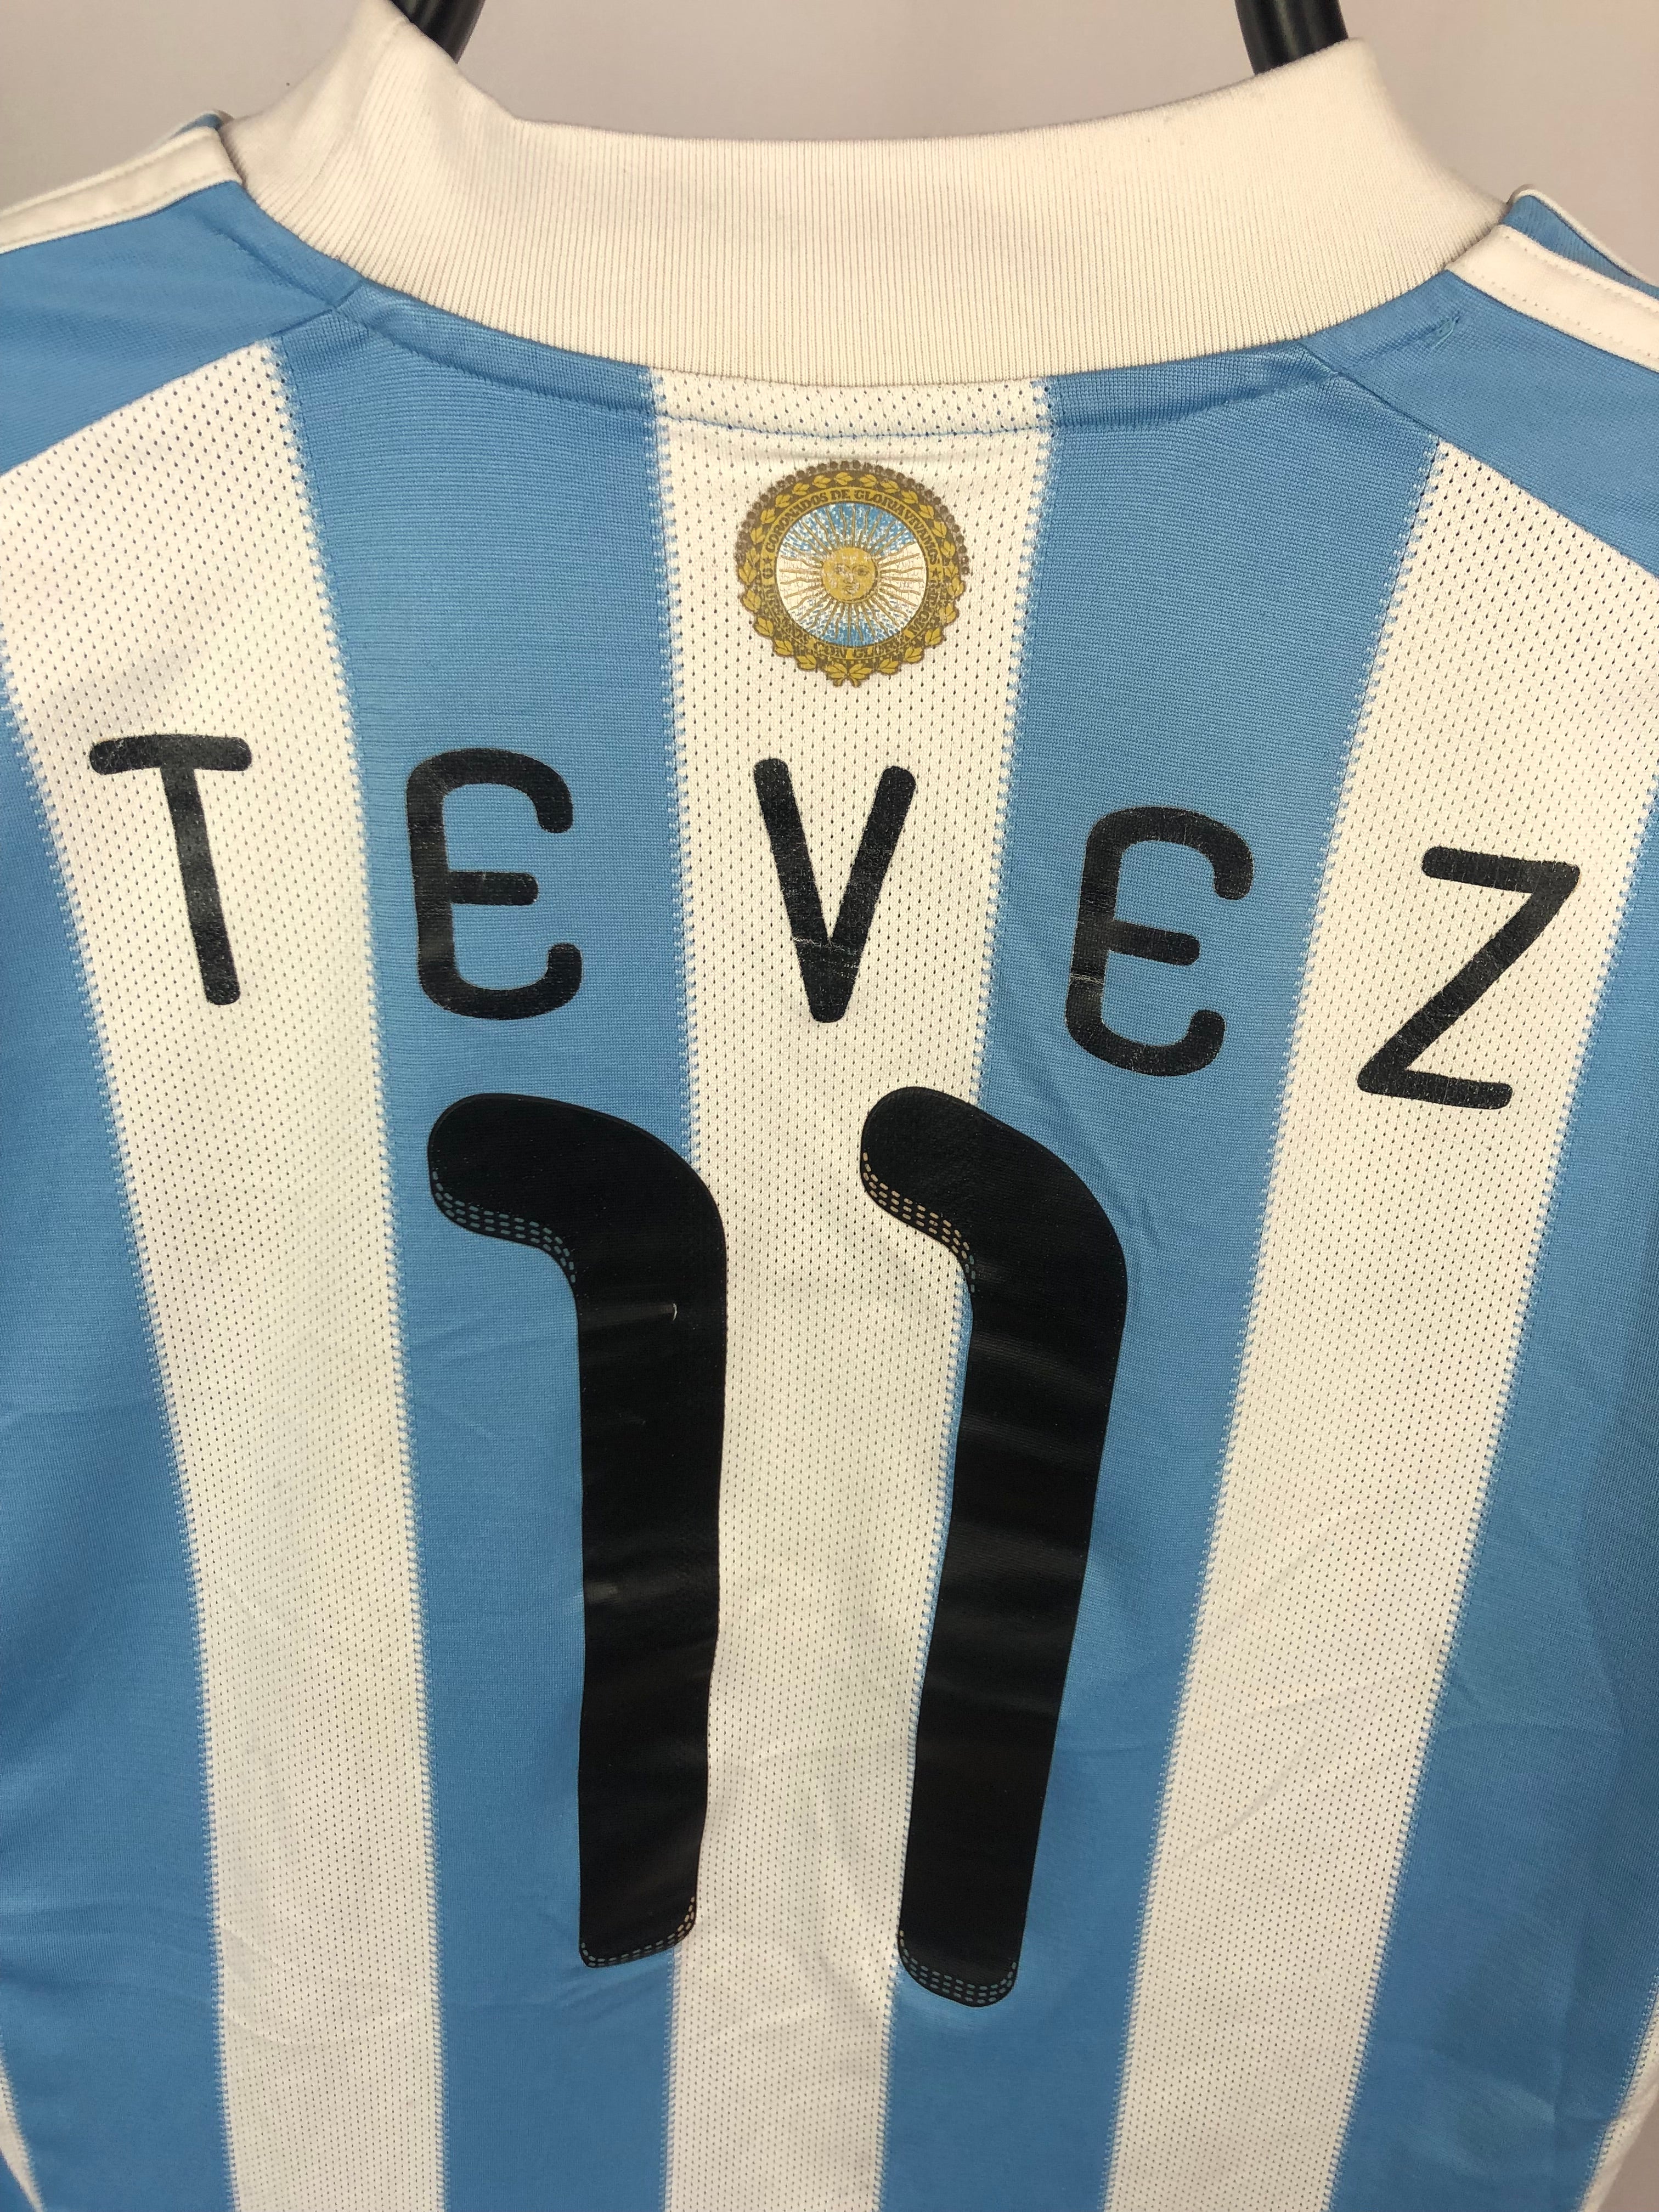 Carlos Tevez Argentina 10/11 Home Shirt - L